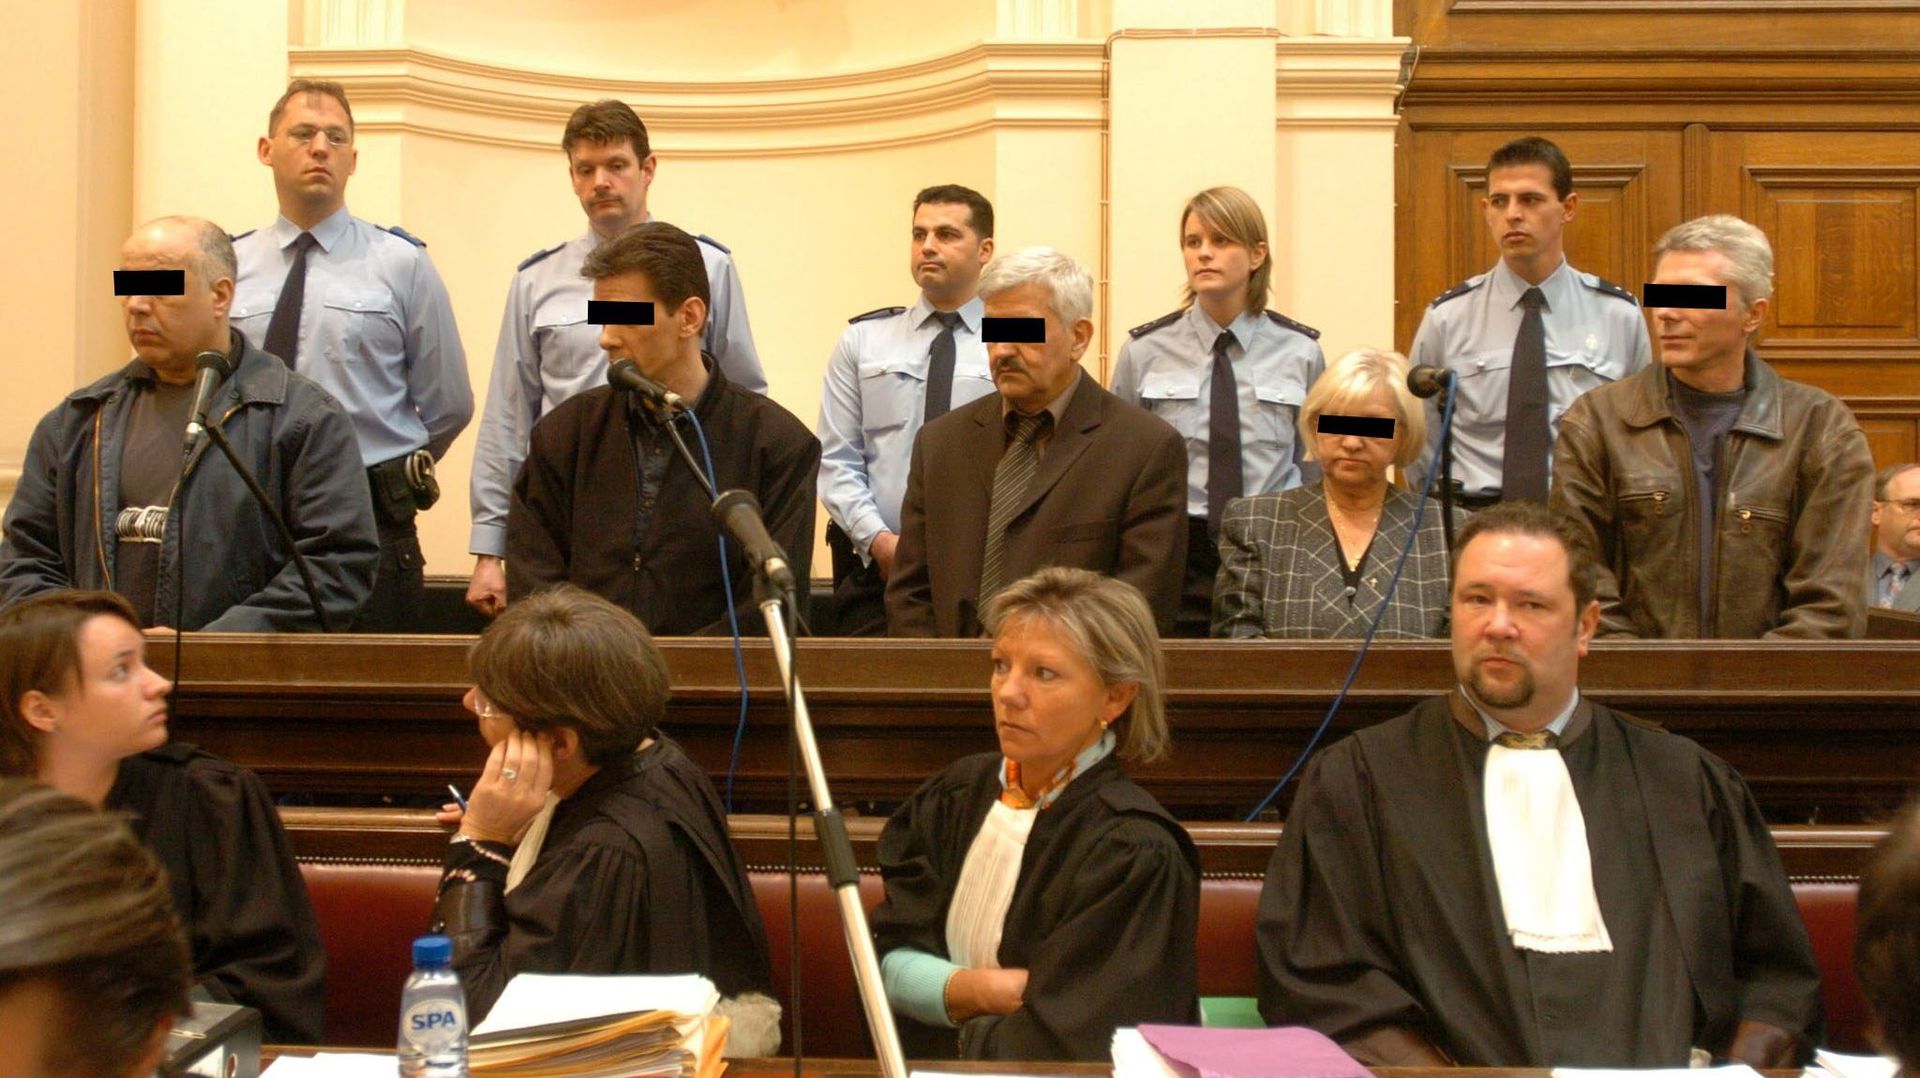 Daniel Bellens, le second à partir de la gauche, photographié le lundi 9 mai 2005 lors de son procès devant la cour d'assises de Mons pour meurtre pour faciliter le vol qualifié le 7 janvier 2001 à Fontaine-L'Evêque (et pour certains d'entre eux, des vols